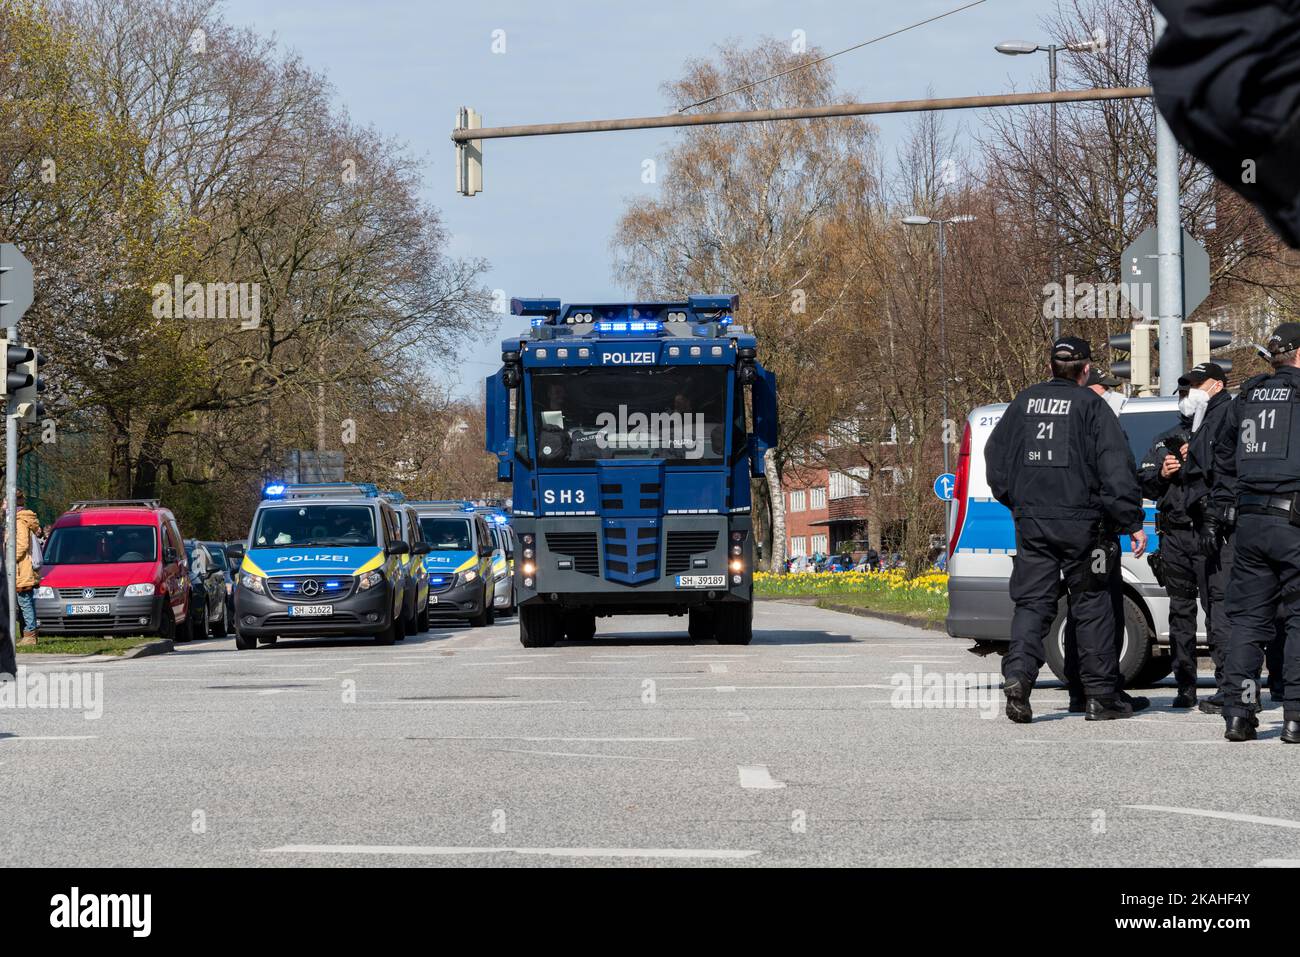 Polizeieinsatzfahrzeuge und ein Wasserwerfer im Einsatz bei einer Demonstration Stock Photo